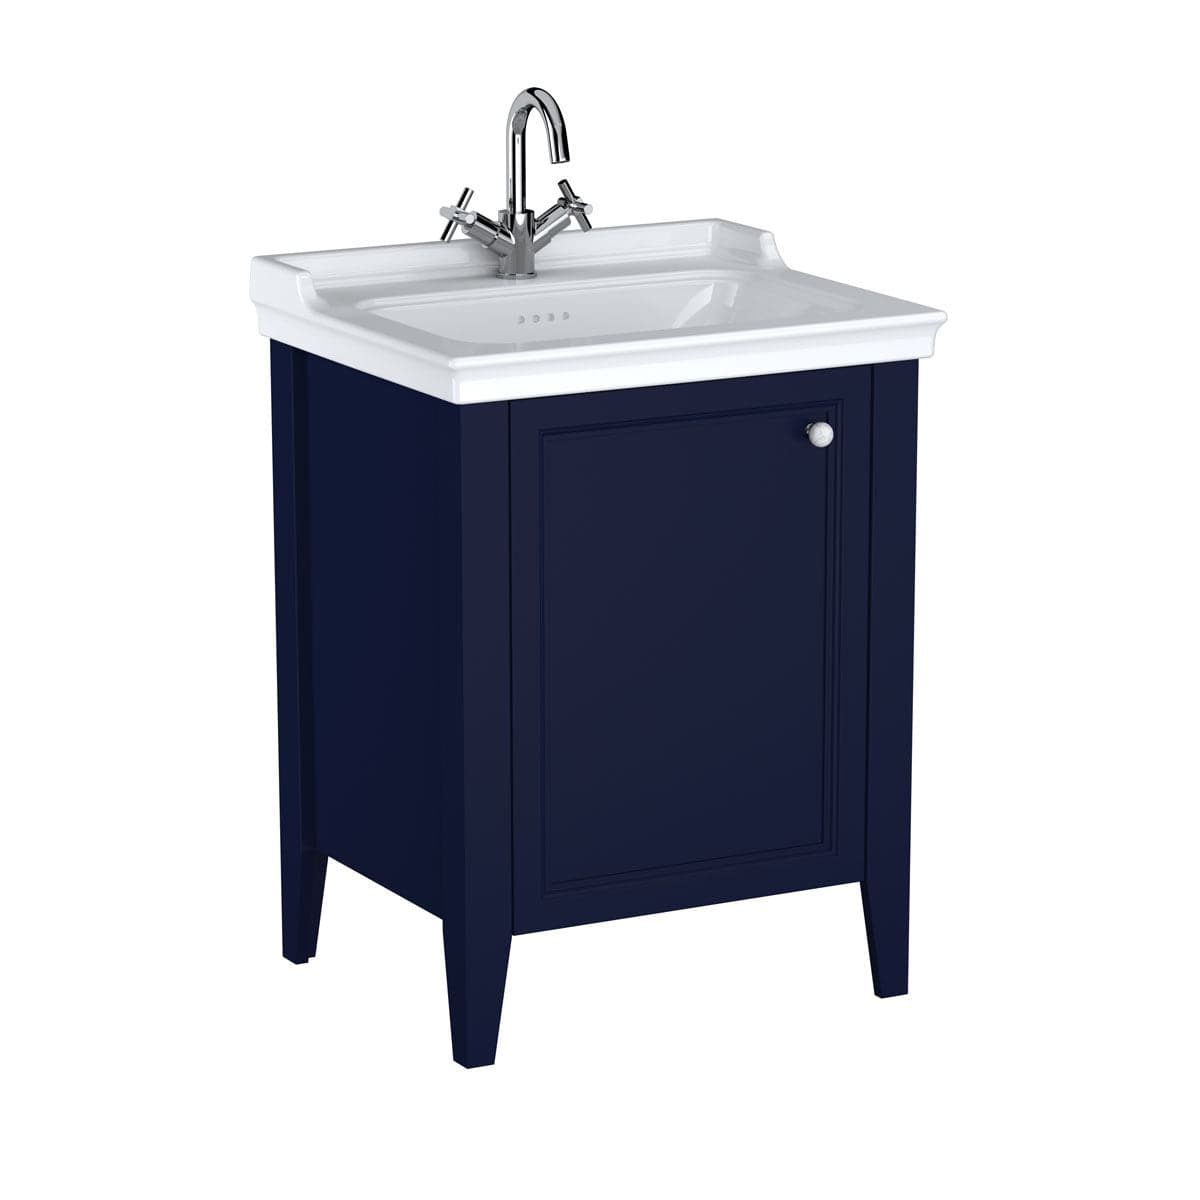 VitrA Valarte Set 65 cm Möbelwaschtisch + Waschtischunterschrank 1 Tür Türanschlag links Stahlblau (Lack)